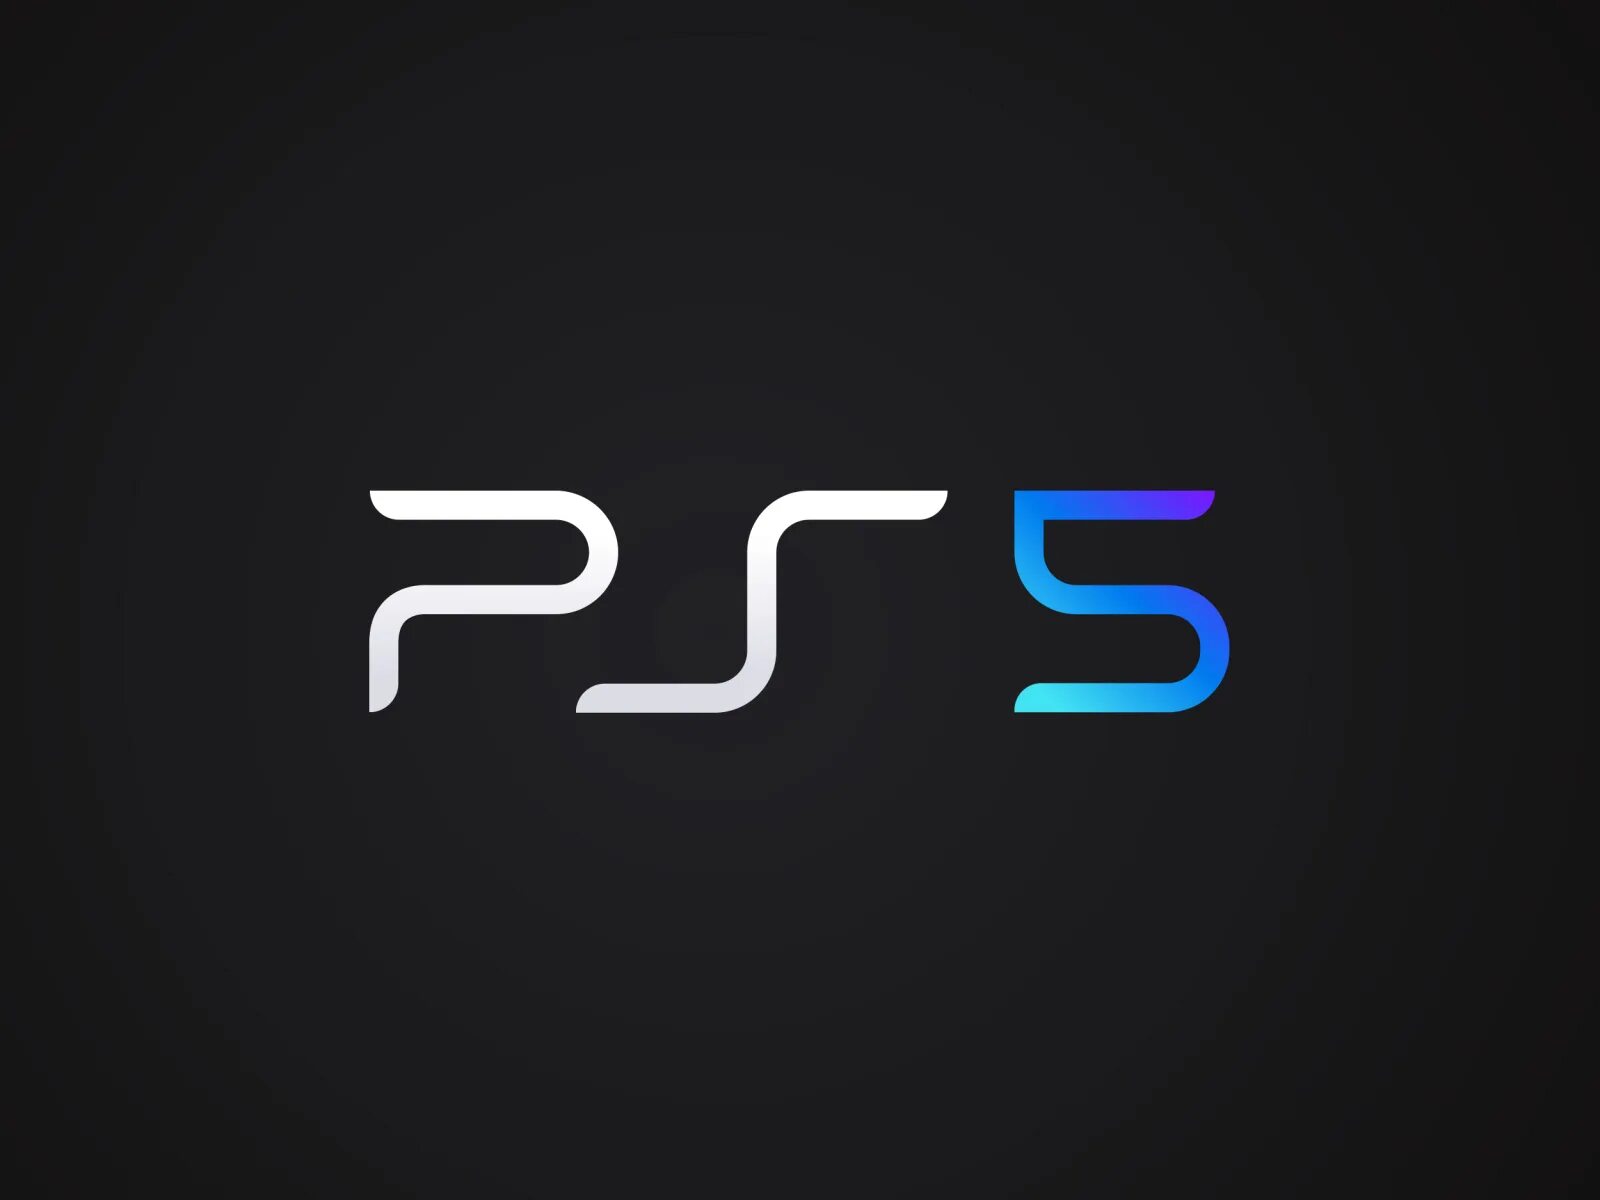 Sony ps5 logo. Sony PLAYSTATION 5. Sony PLAYSTATION 5 лого. Ps4 ps5 логотип. Logo 5 4